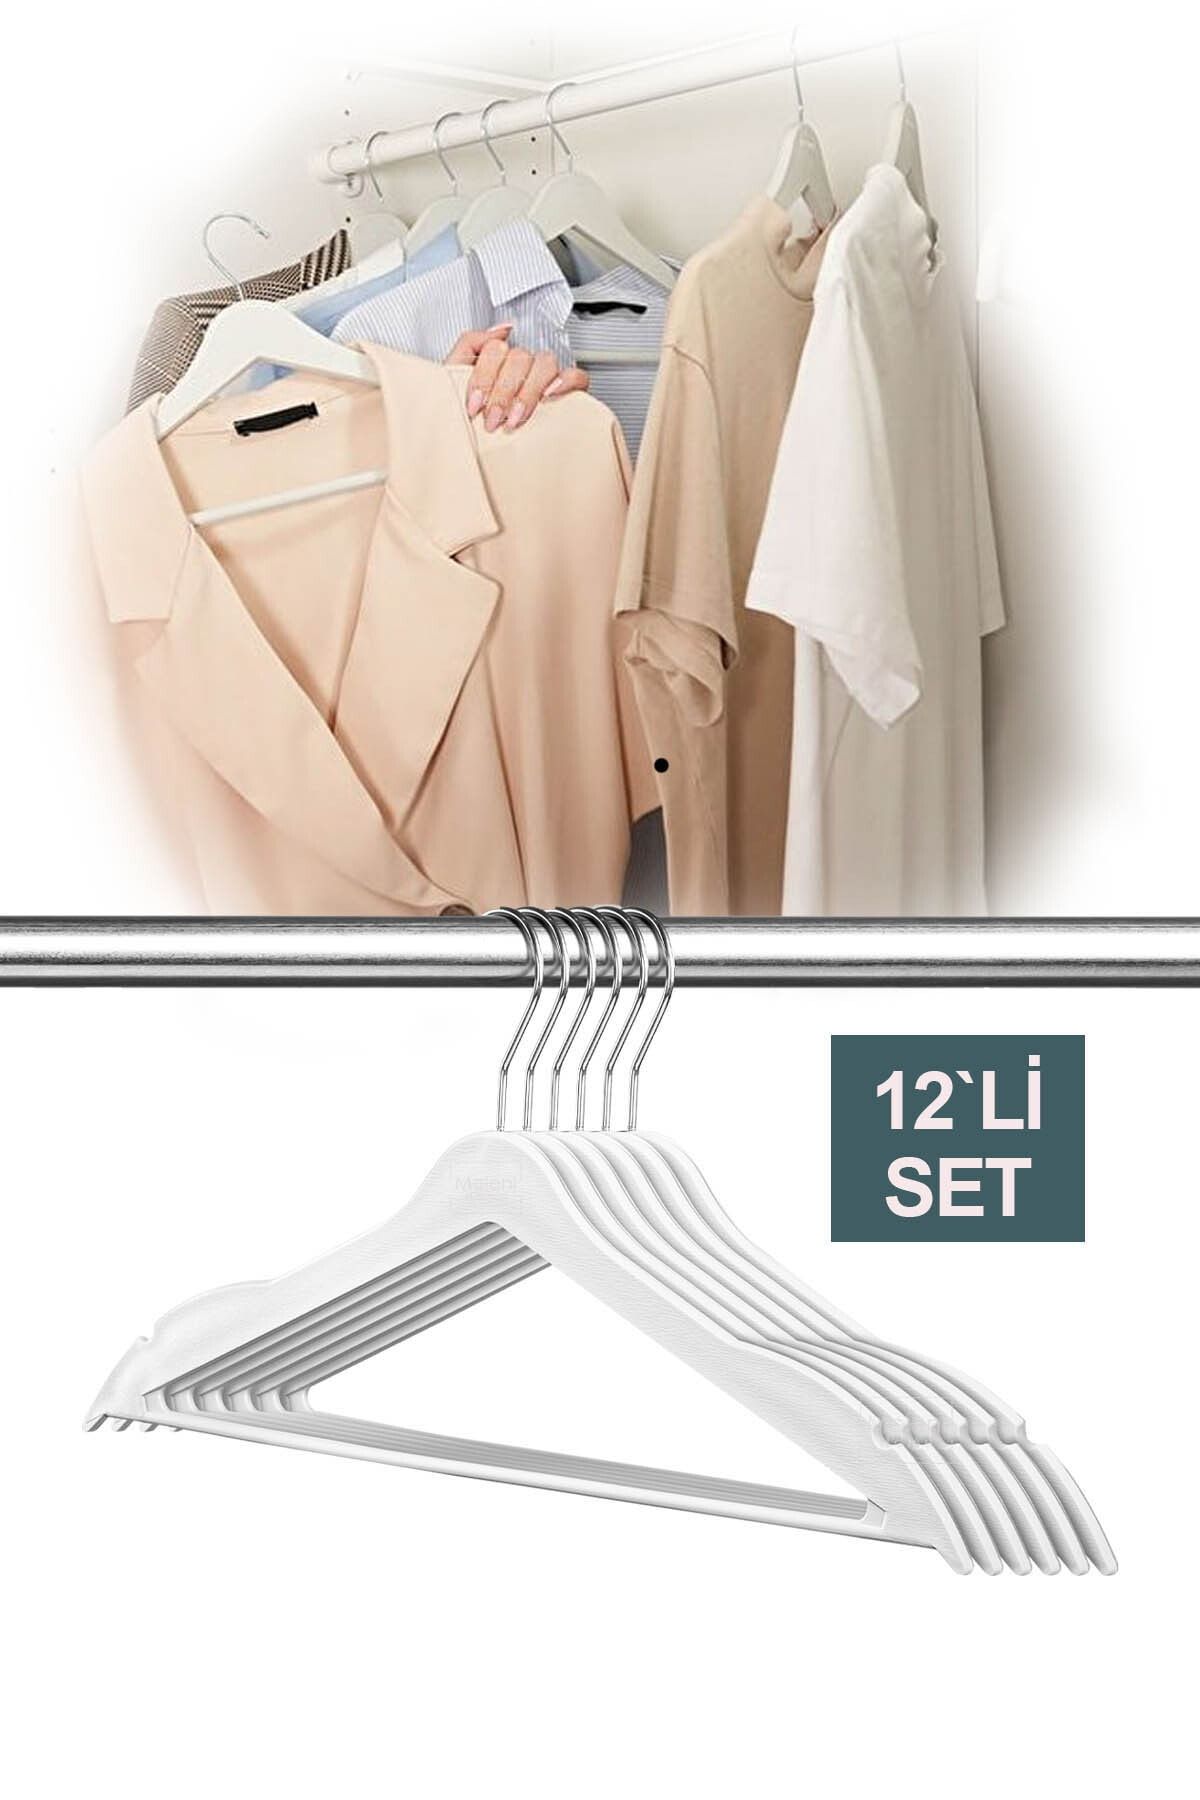 Meleni Home 12 Adet Ahşap Görünümlü Plastik Askı - Kıyafet Elbise Askısı Beyaz